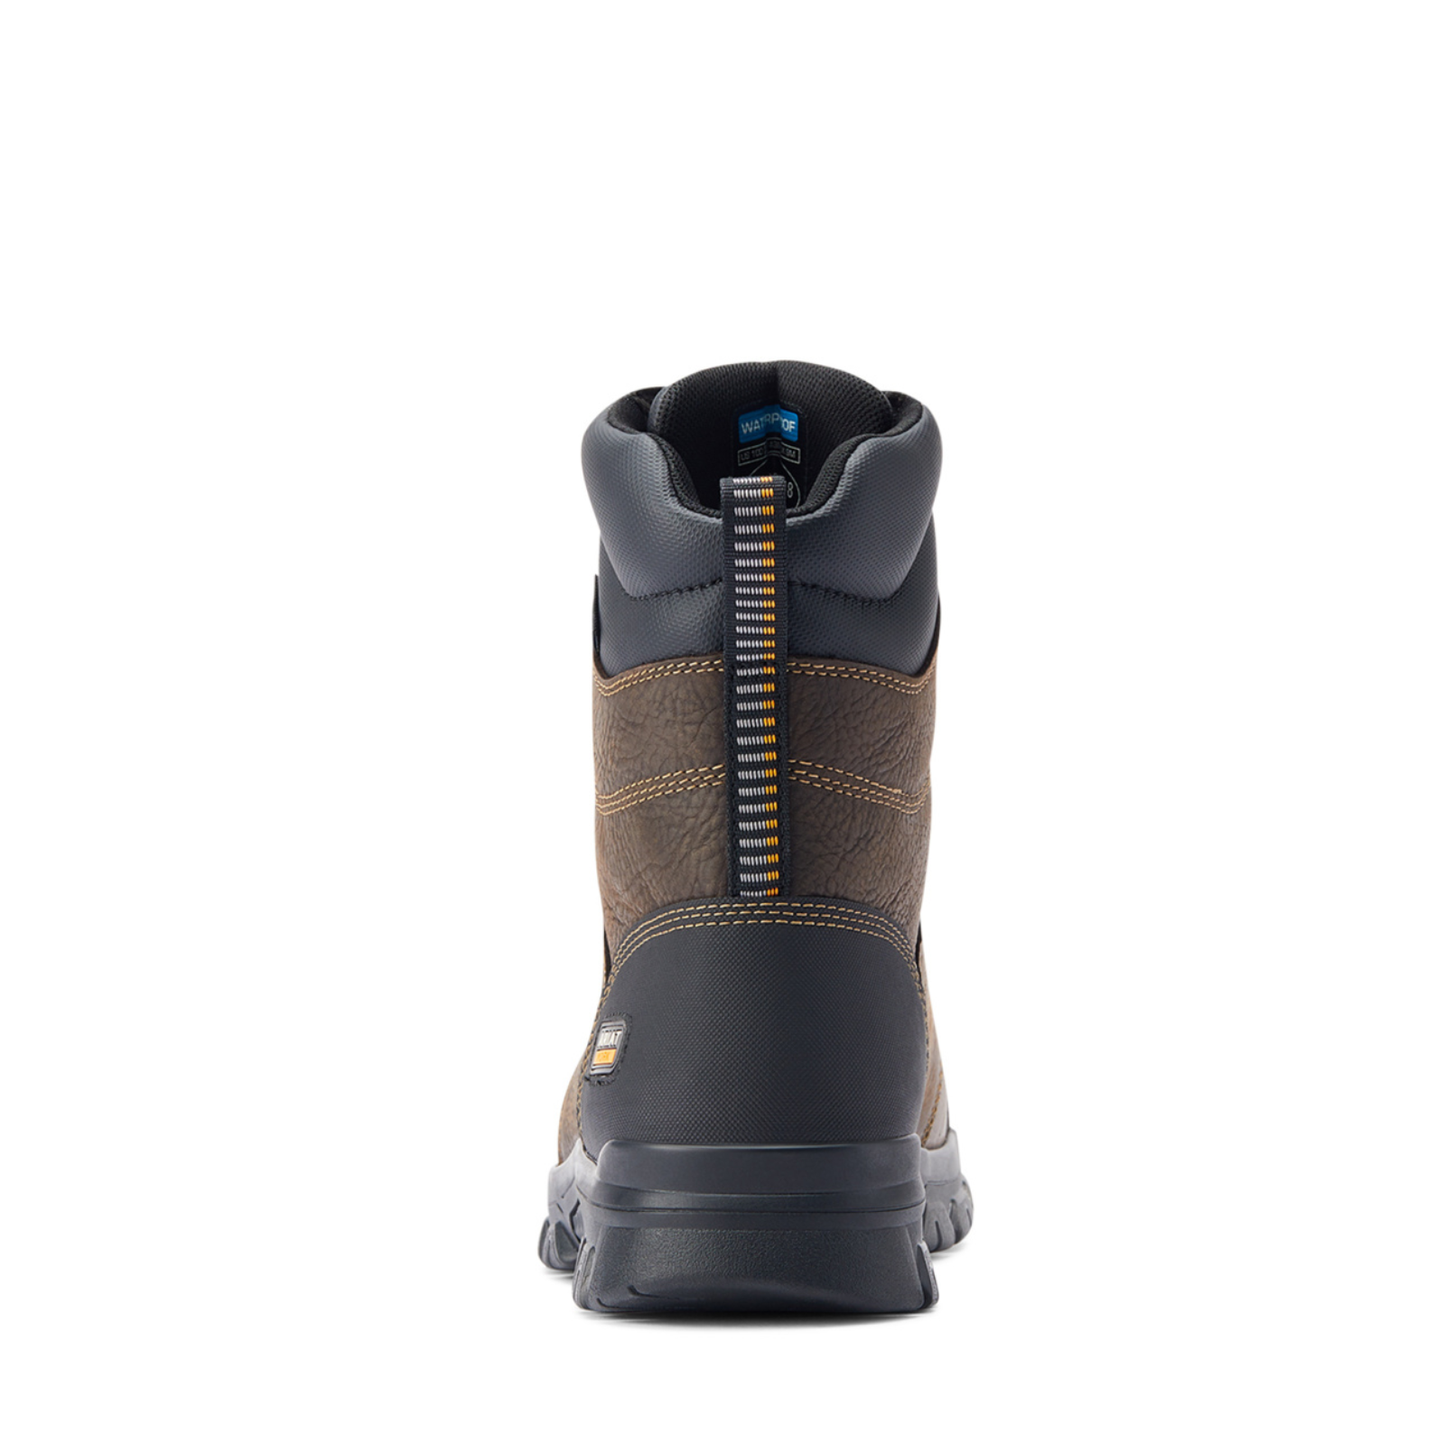 Ariat® Men's Treadfast 8" H2O Dark Brown Work Boots 10042484